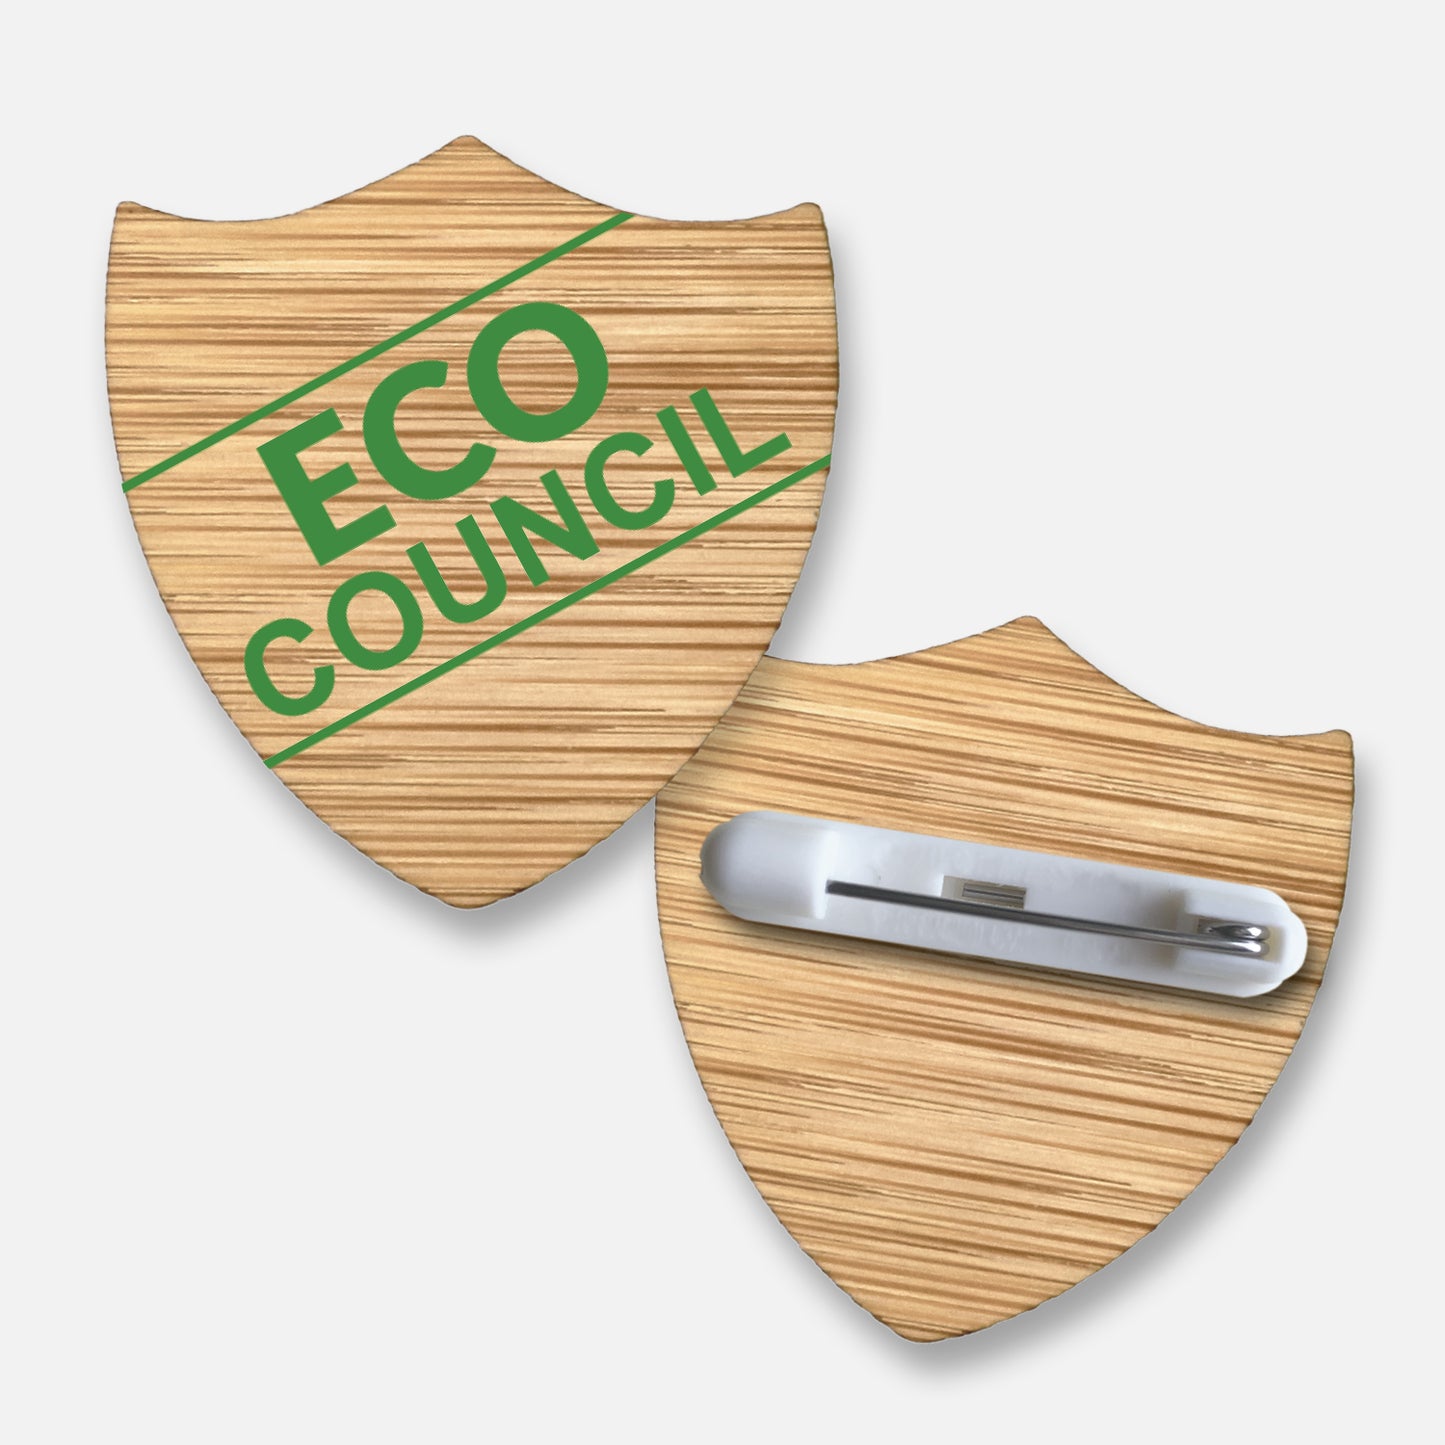 Bamboo Shield Natural Eco Council Badge - 35mm